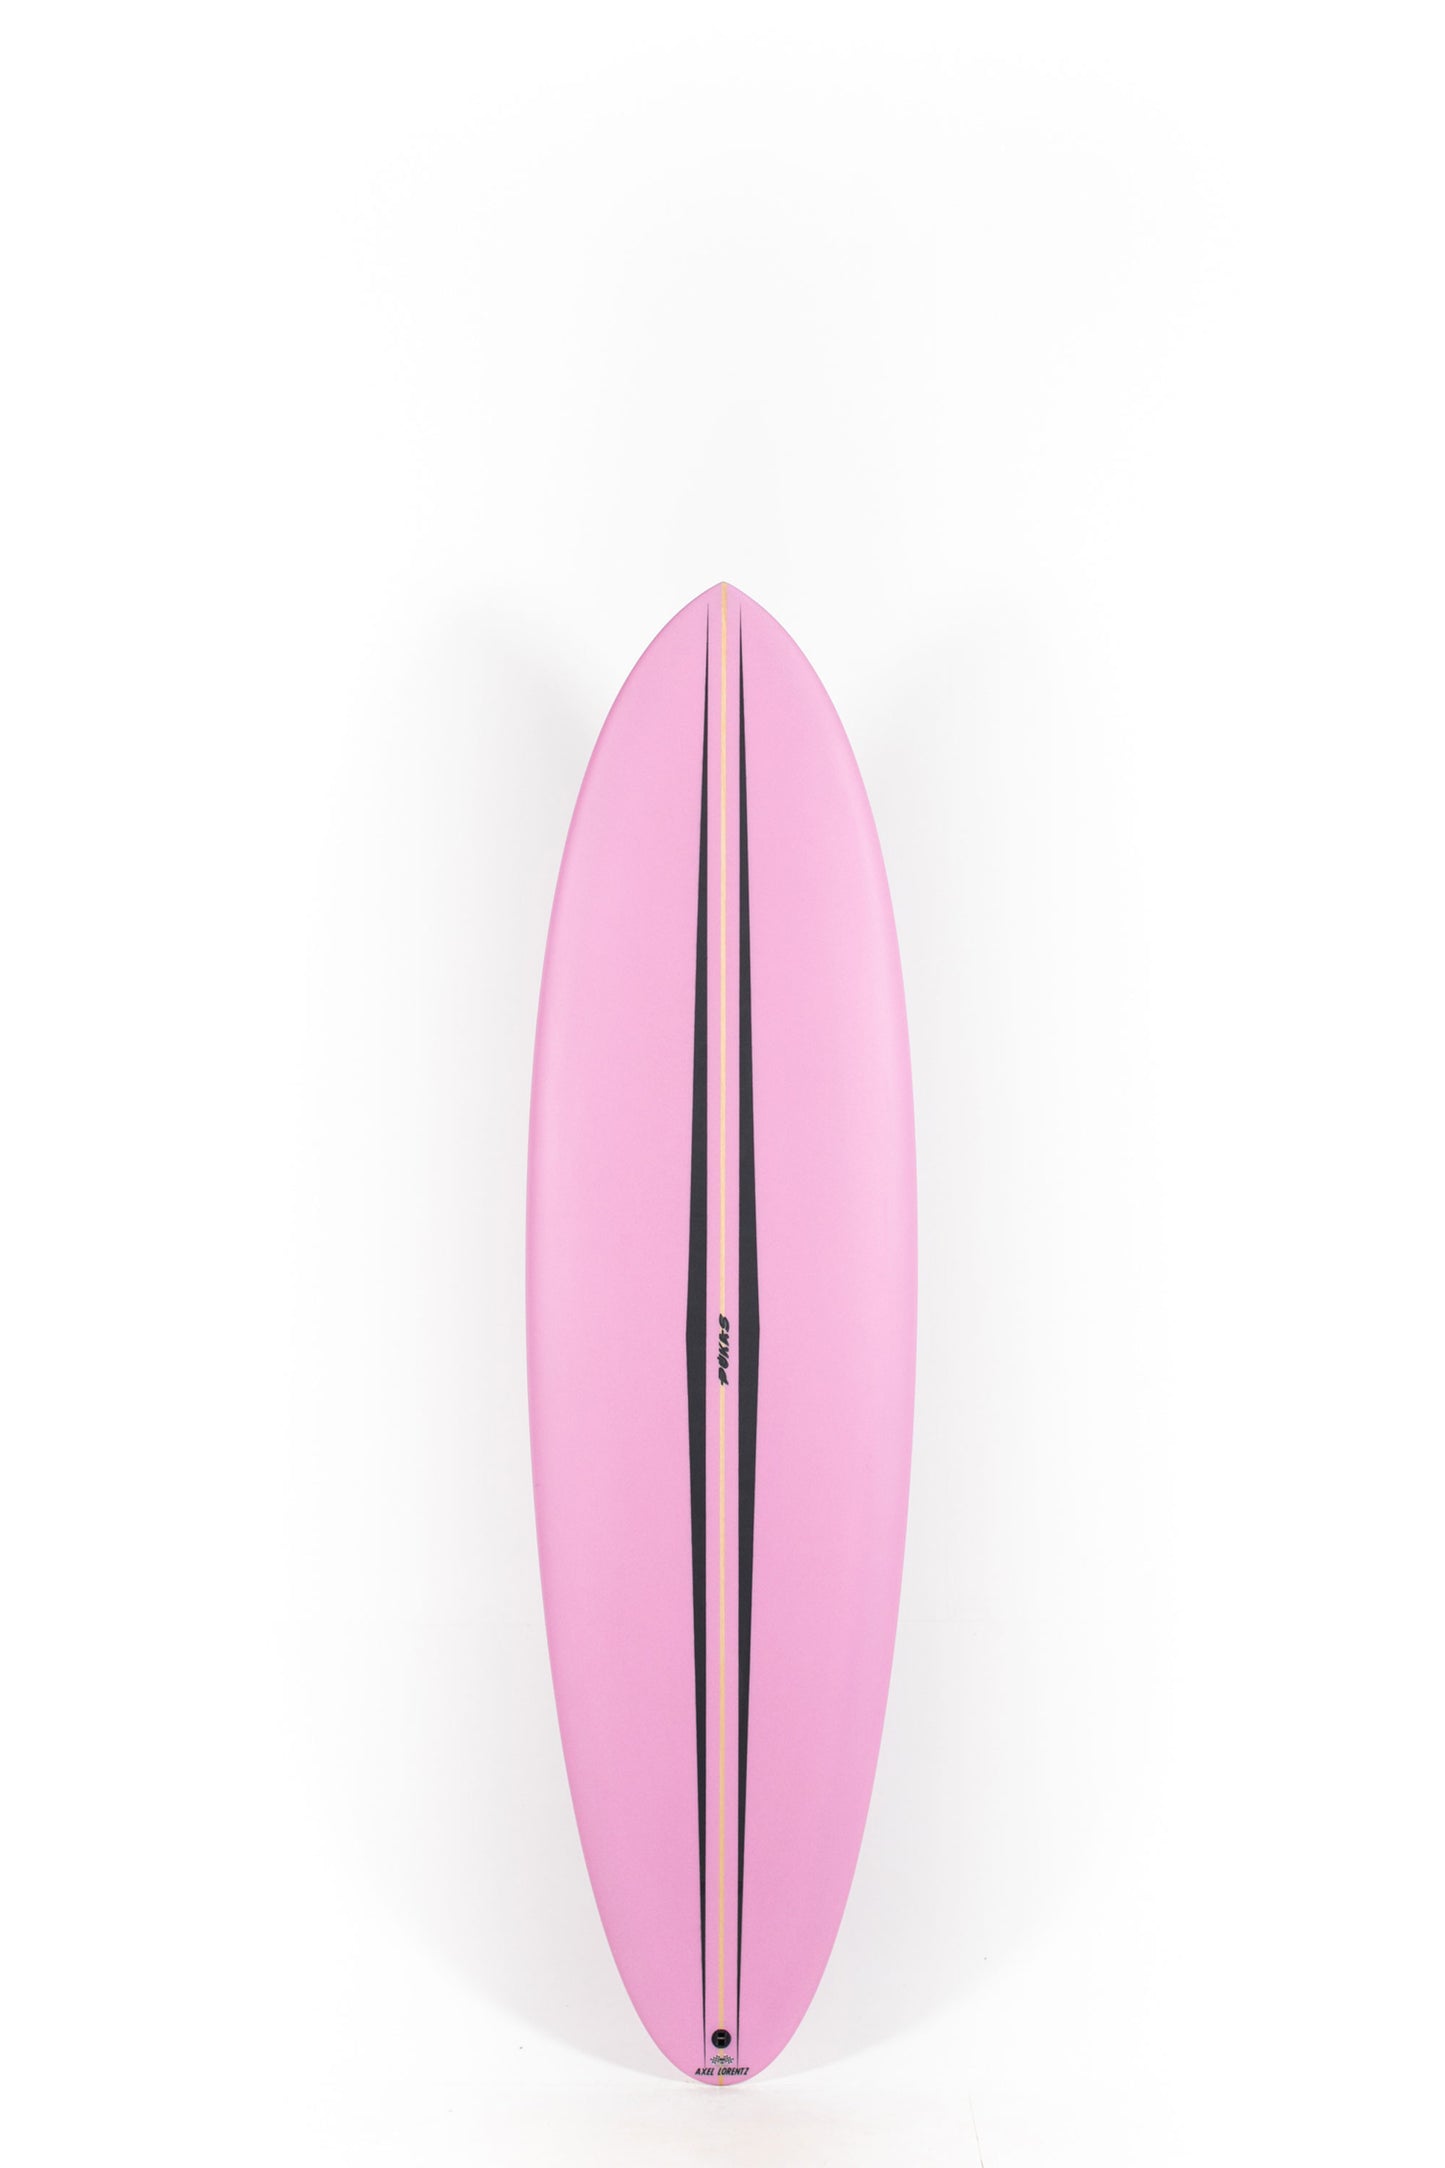 Pukas Surf Shop - Pukas Surfboard - LA CÔTE by Axel Lorentz - 6'9" x 21,31 x 2,91 - 45,62L -  AX08239